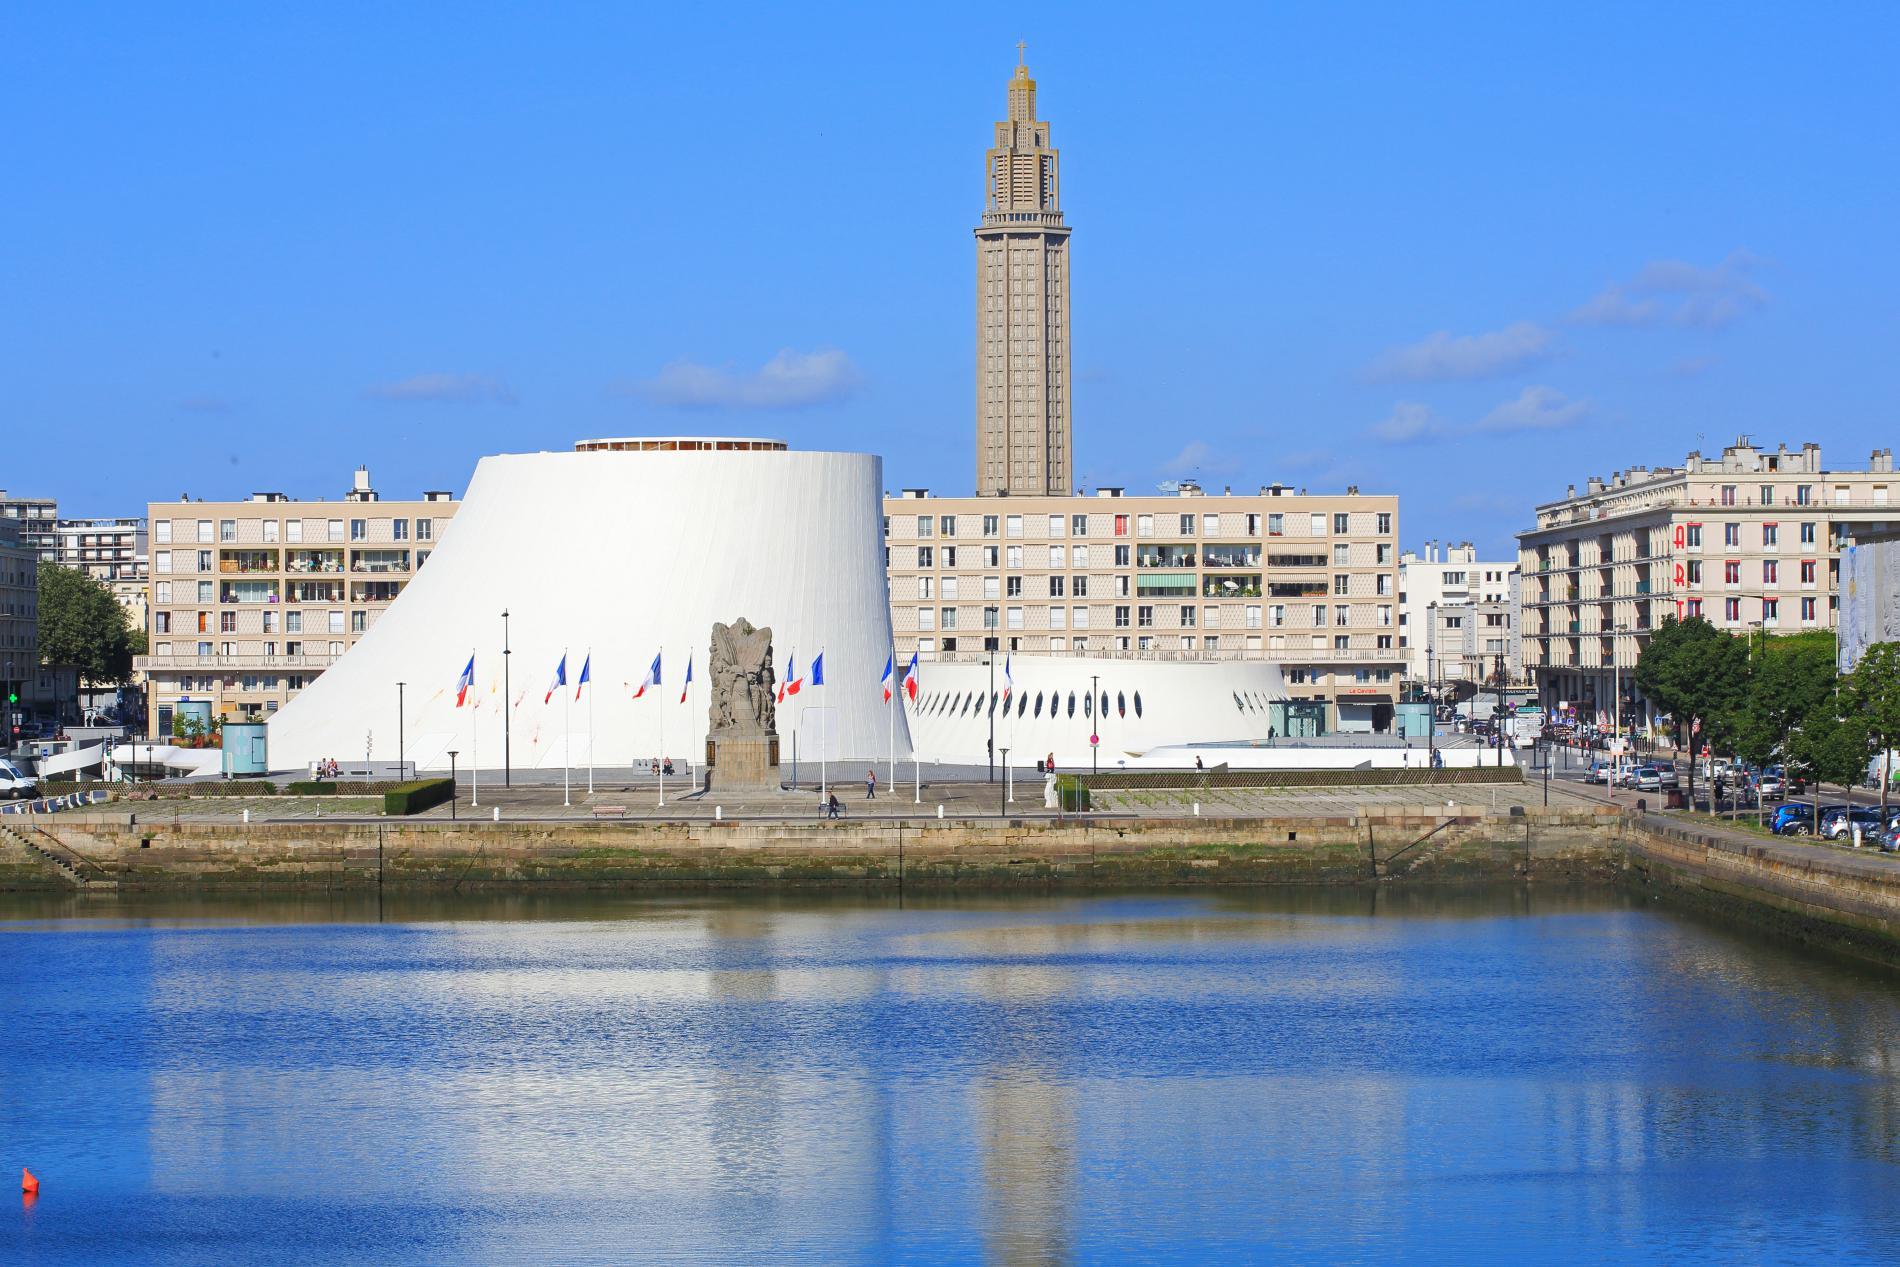  Le Havre  en f te pour ses 500  ans  Madame Figaro